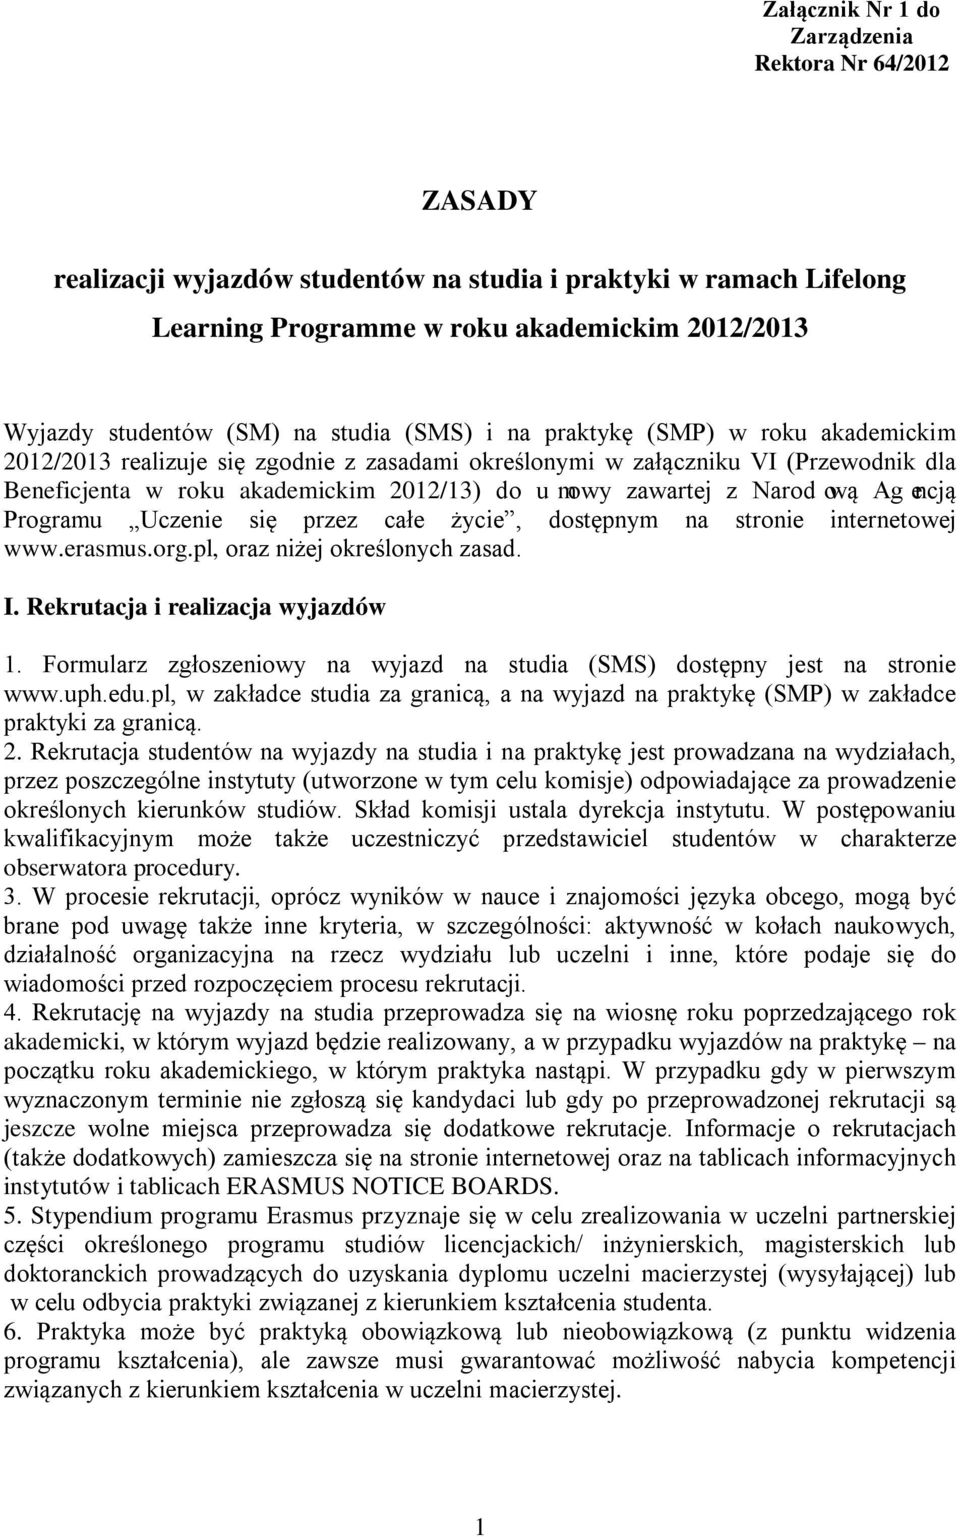 Narodową Agencją Programu Uczenie się przez całe życie, dostępnym na stronie internetowej www.erasmus.org.pl, oraz niżej określonych zasad. I. Rekrutacja i realizacja wyjazdów 1.